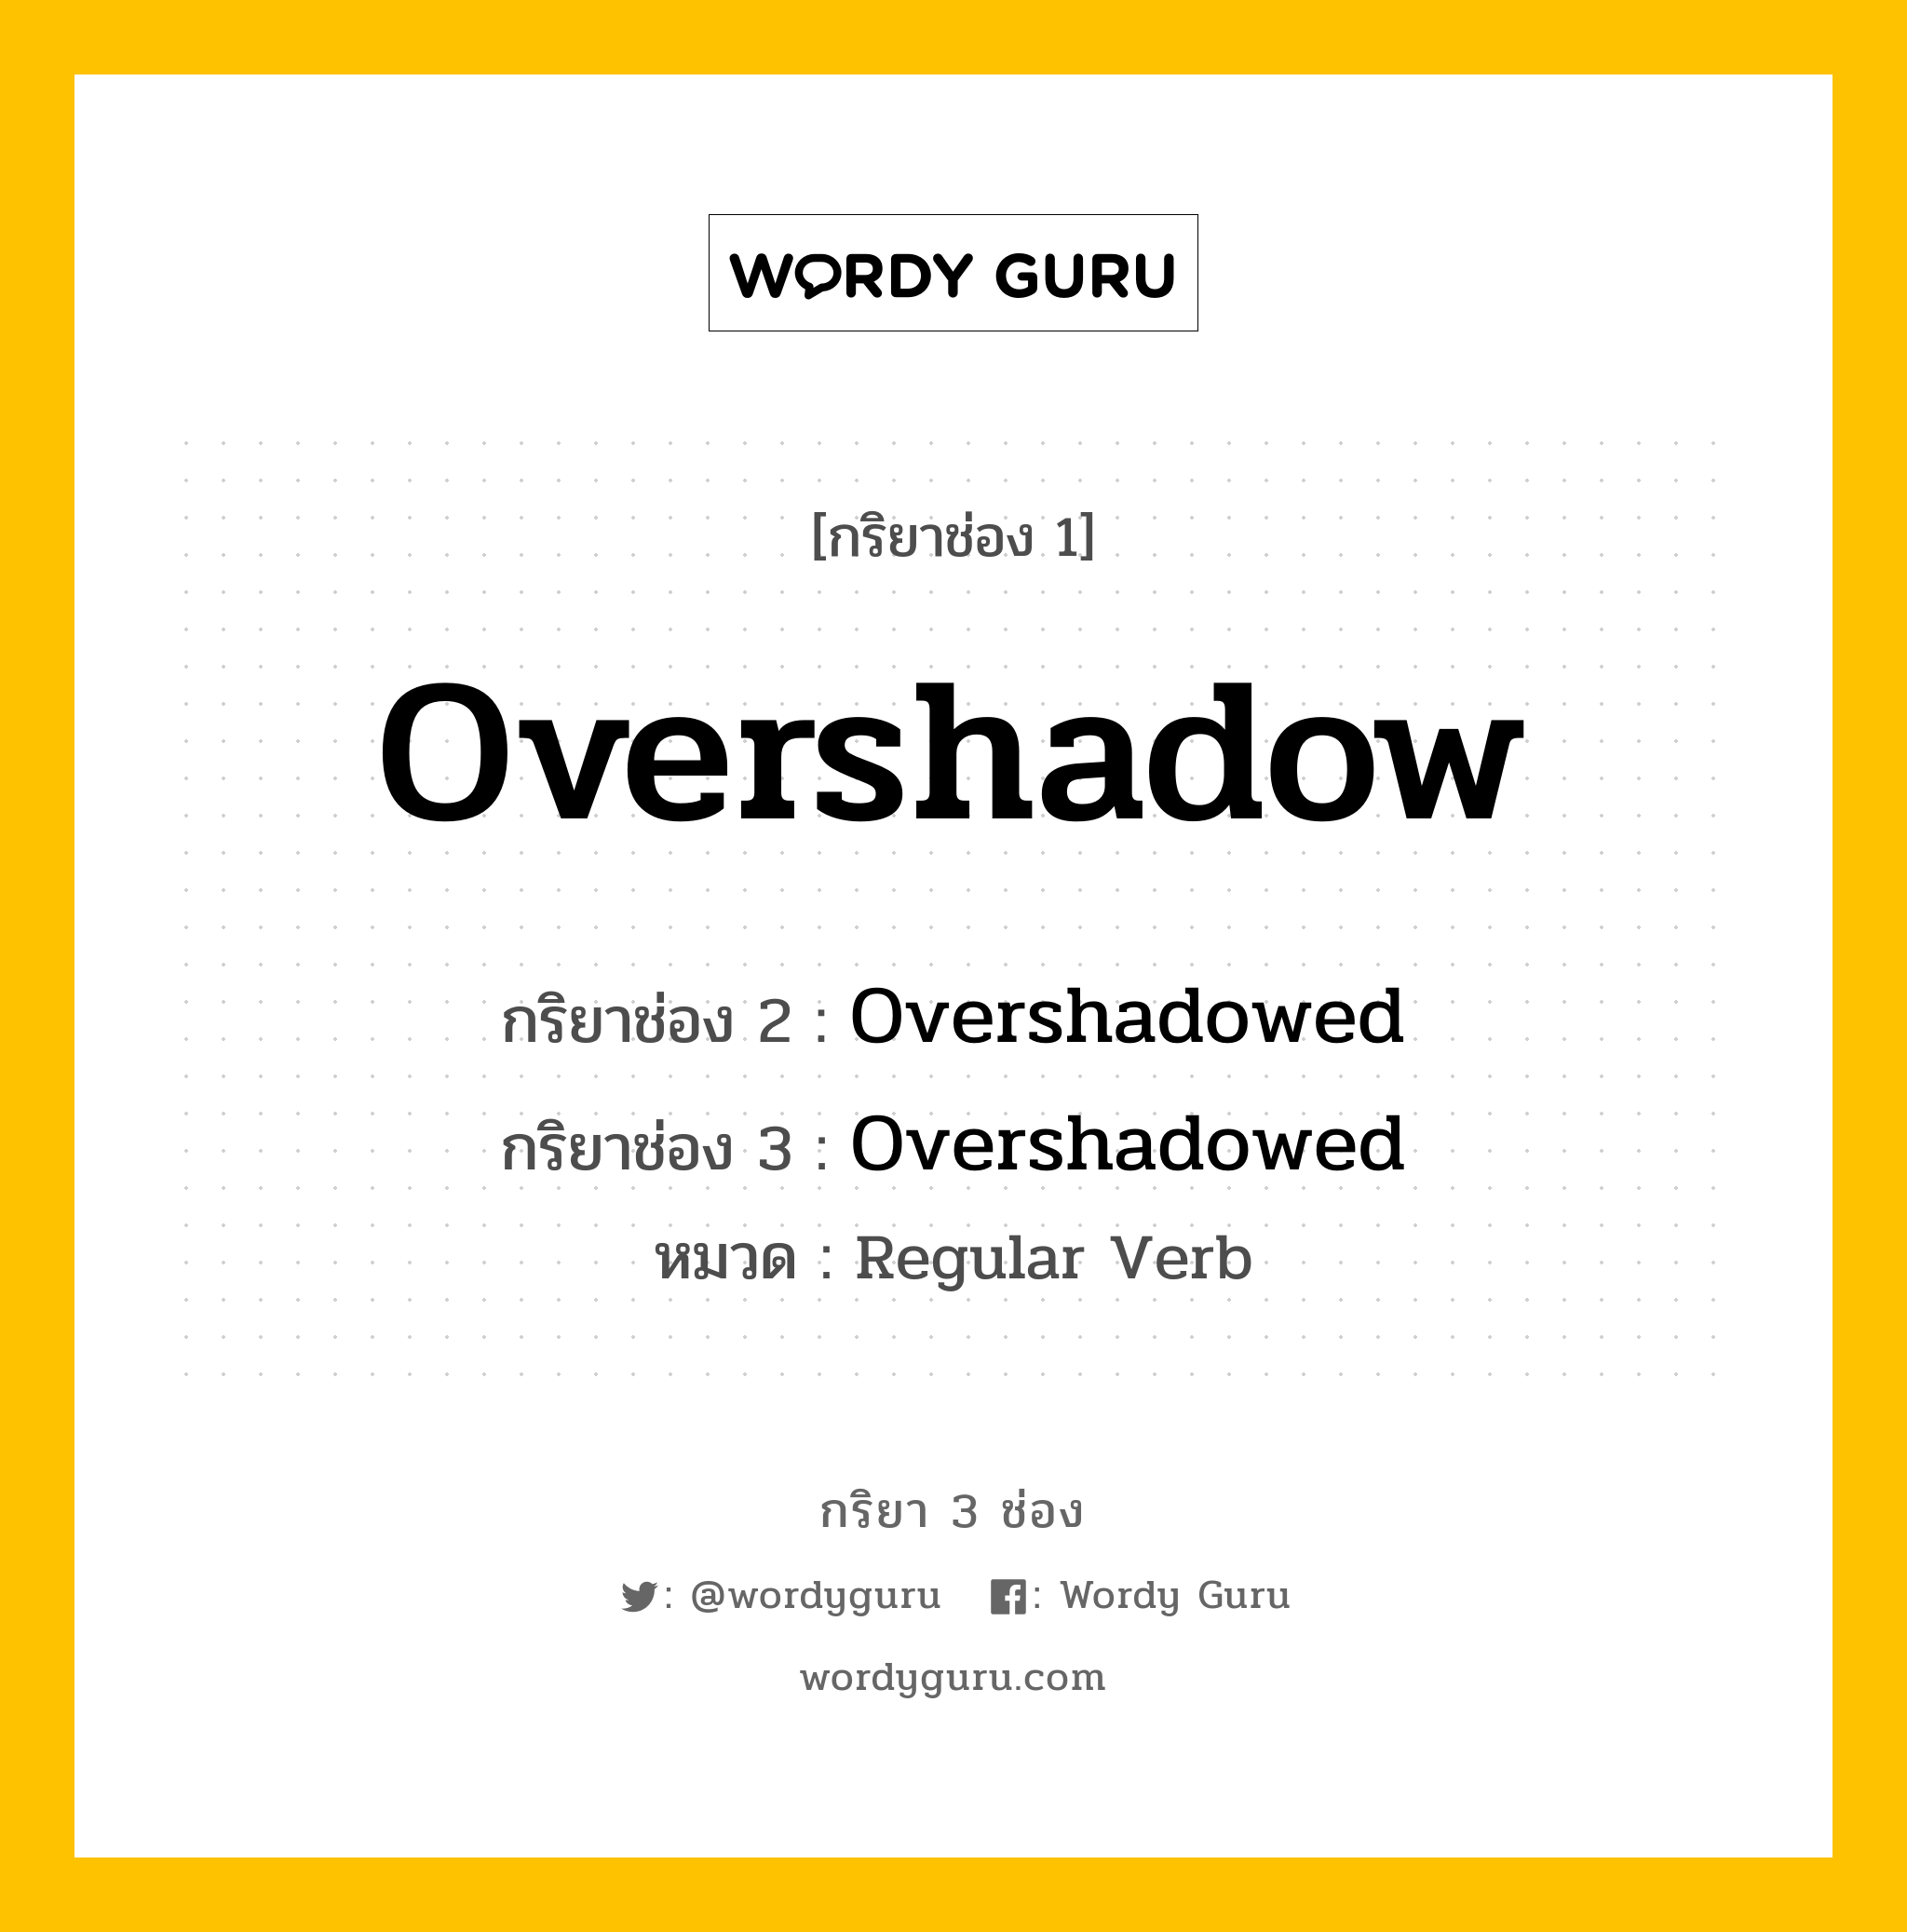 กริยา 3 ช่อง: Overshadow ช่อง 2 Overshadow ช่อง 3 คืออะไร, กริยาช่อง 1 Overshadow กริยาช่อง 2 Overshadowed กริยาช่อง 3 Overshadowed หมวด Regular Verb หมวด Regular Verb